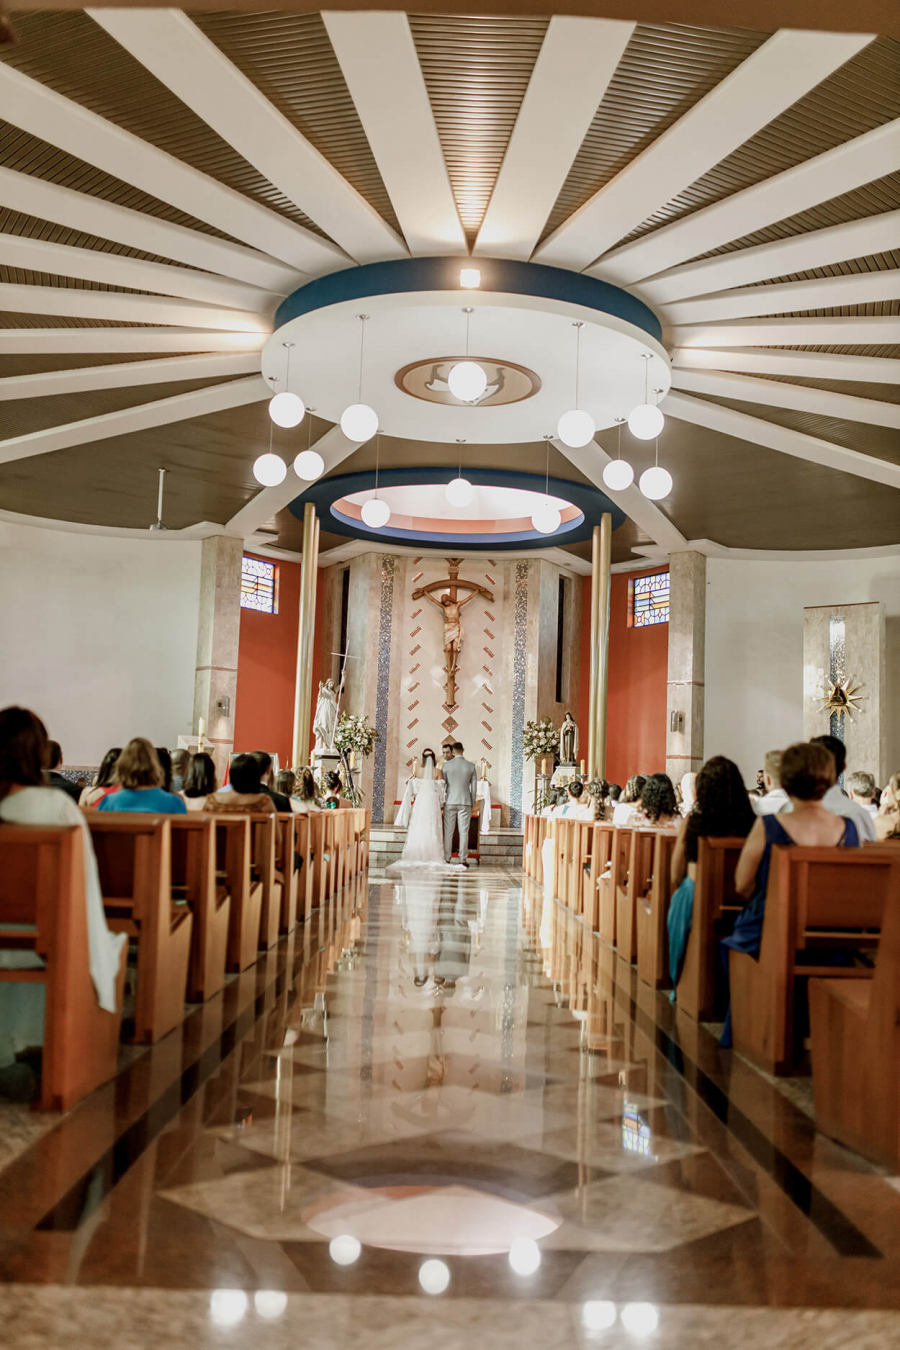  Casamento-na-Igreja (10)